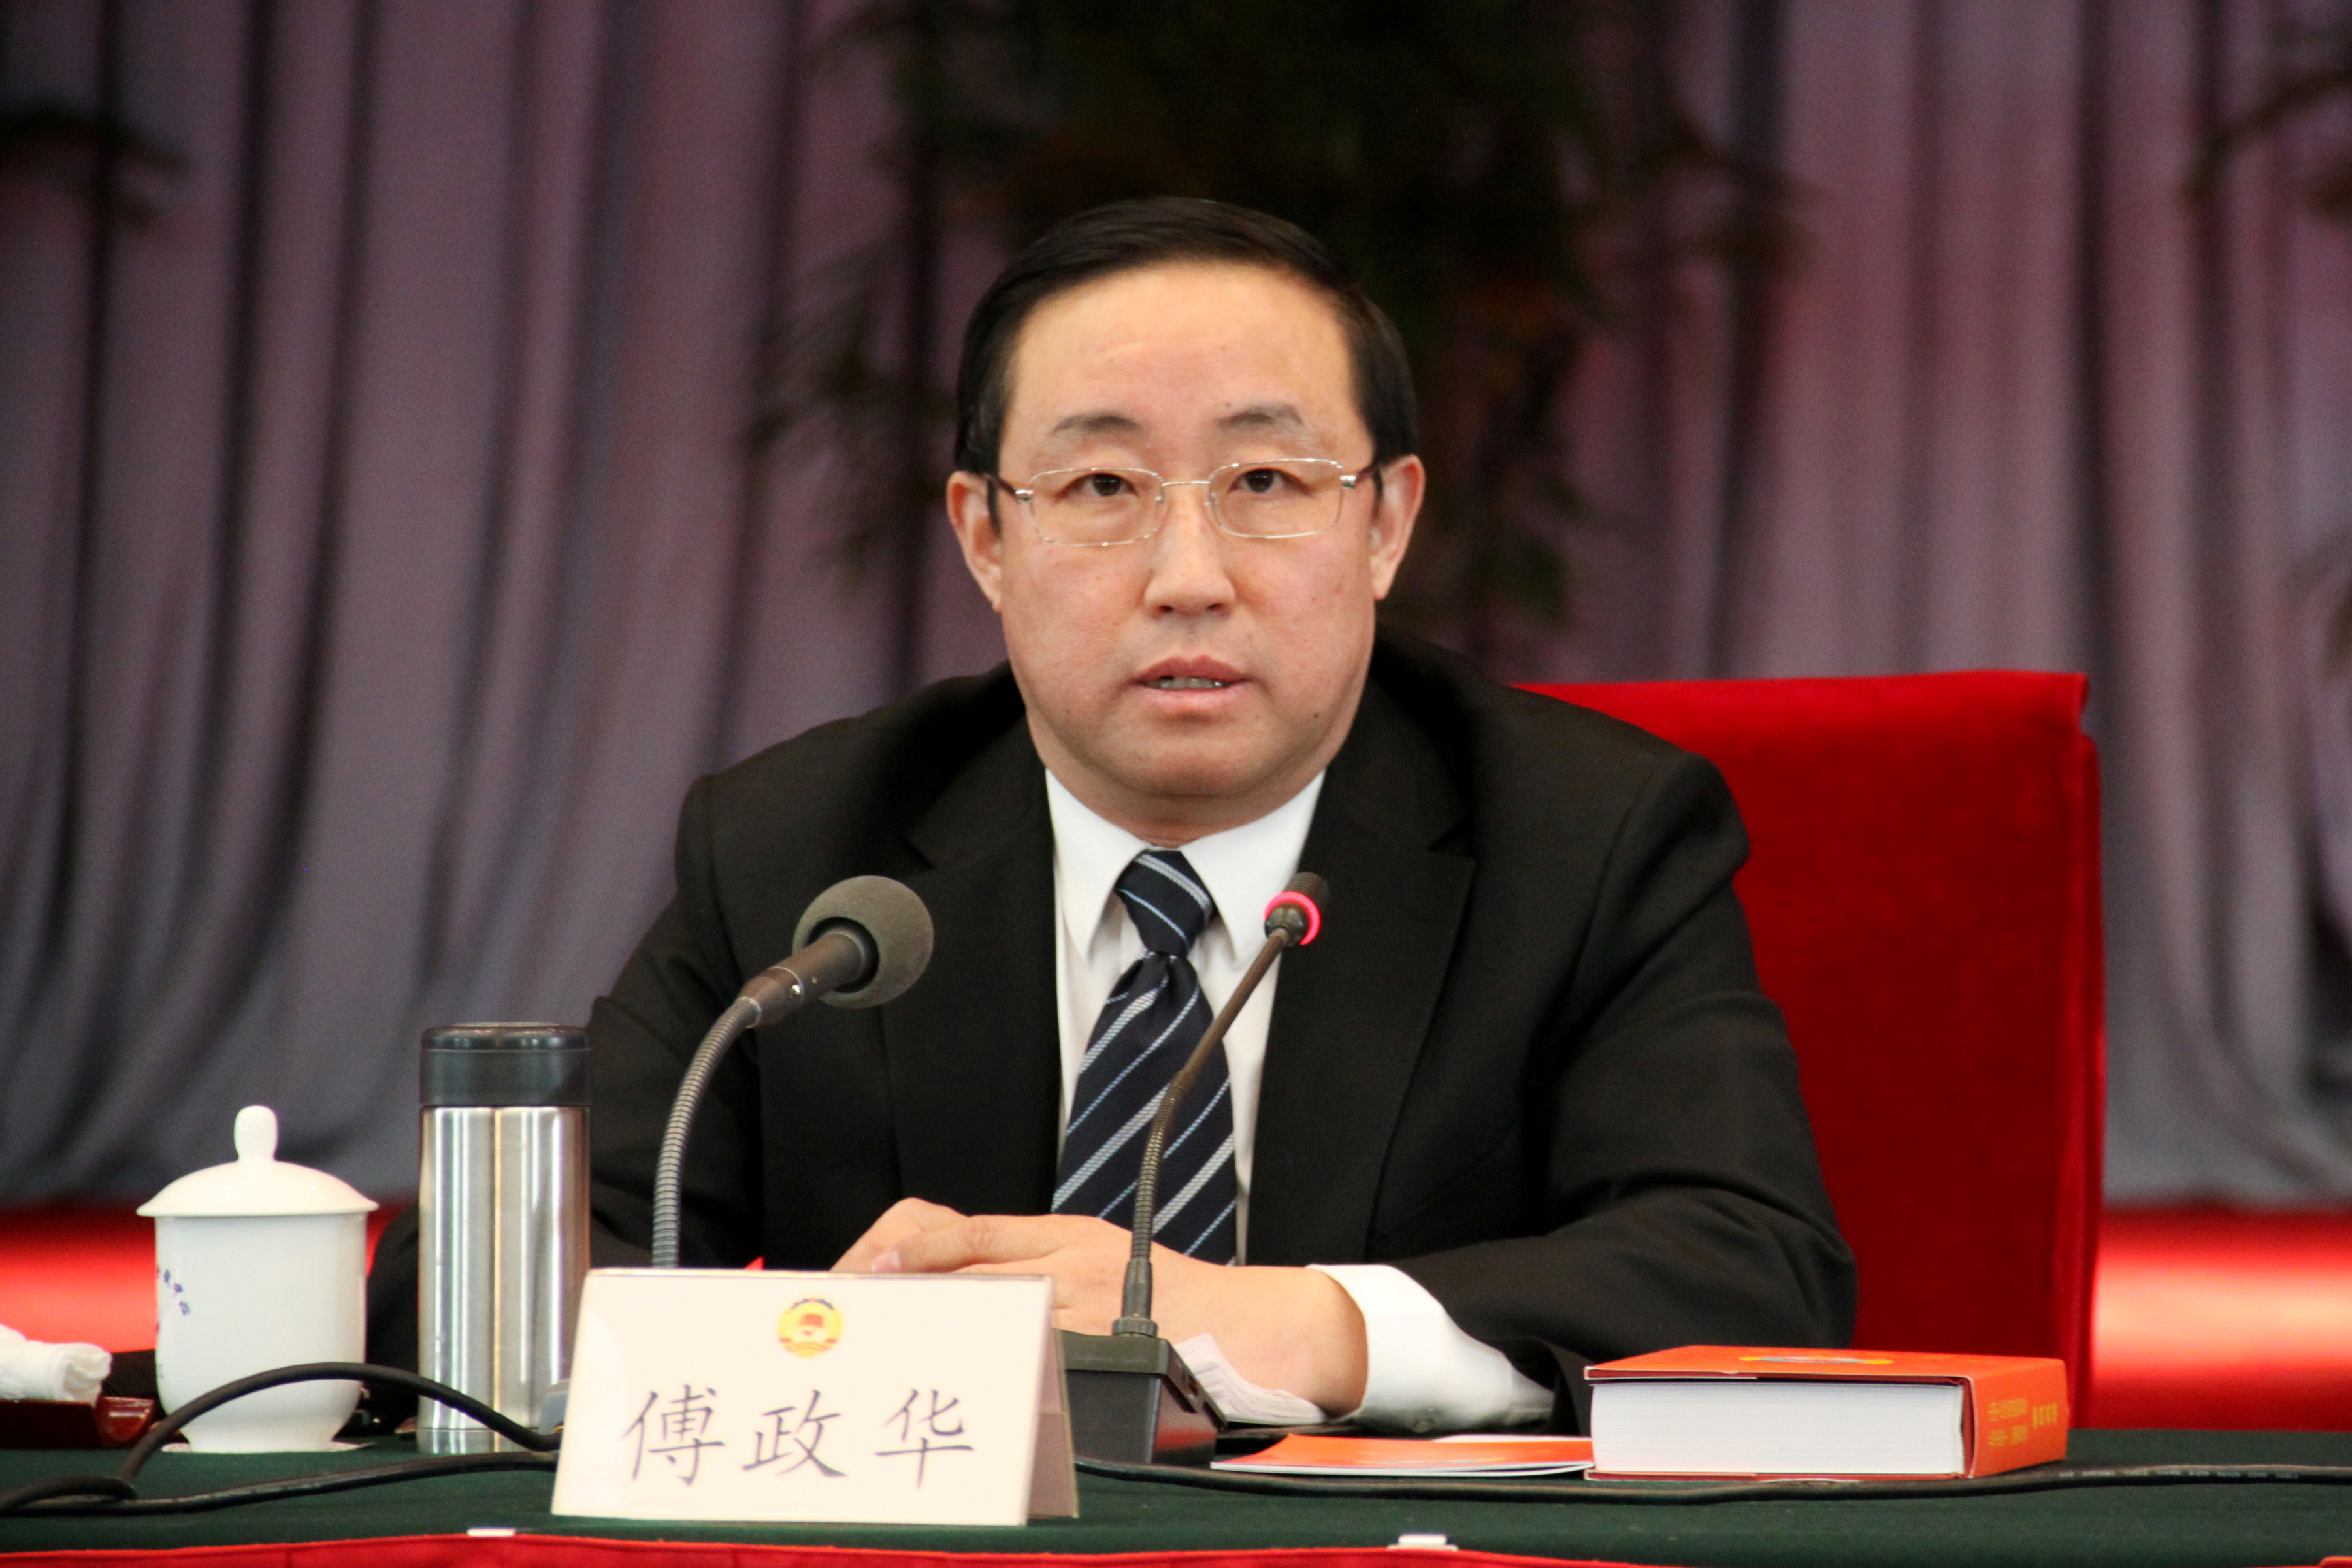 Fu Zhenghua is pictured during a meeting in Beijing in 2011 when he was head of Beijing Municipal Public Security Bureau